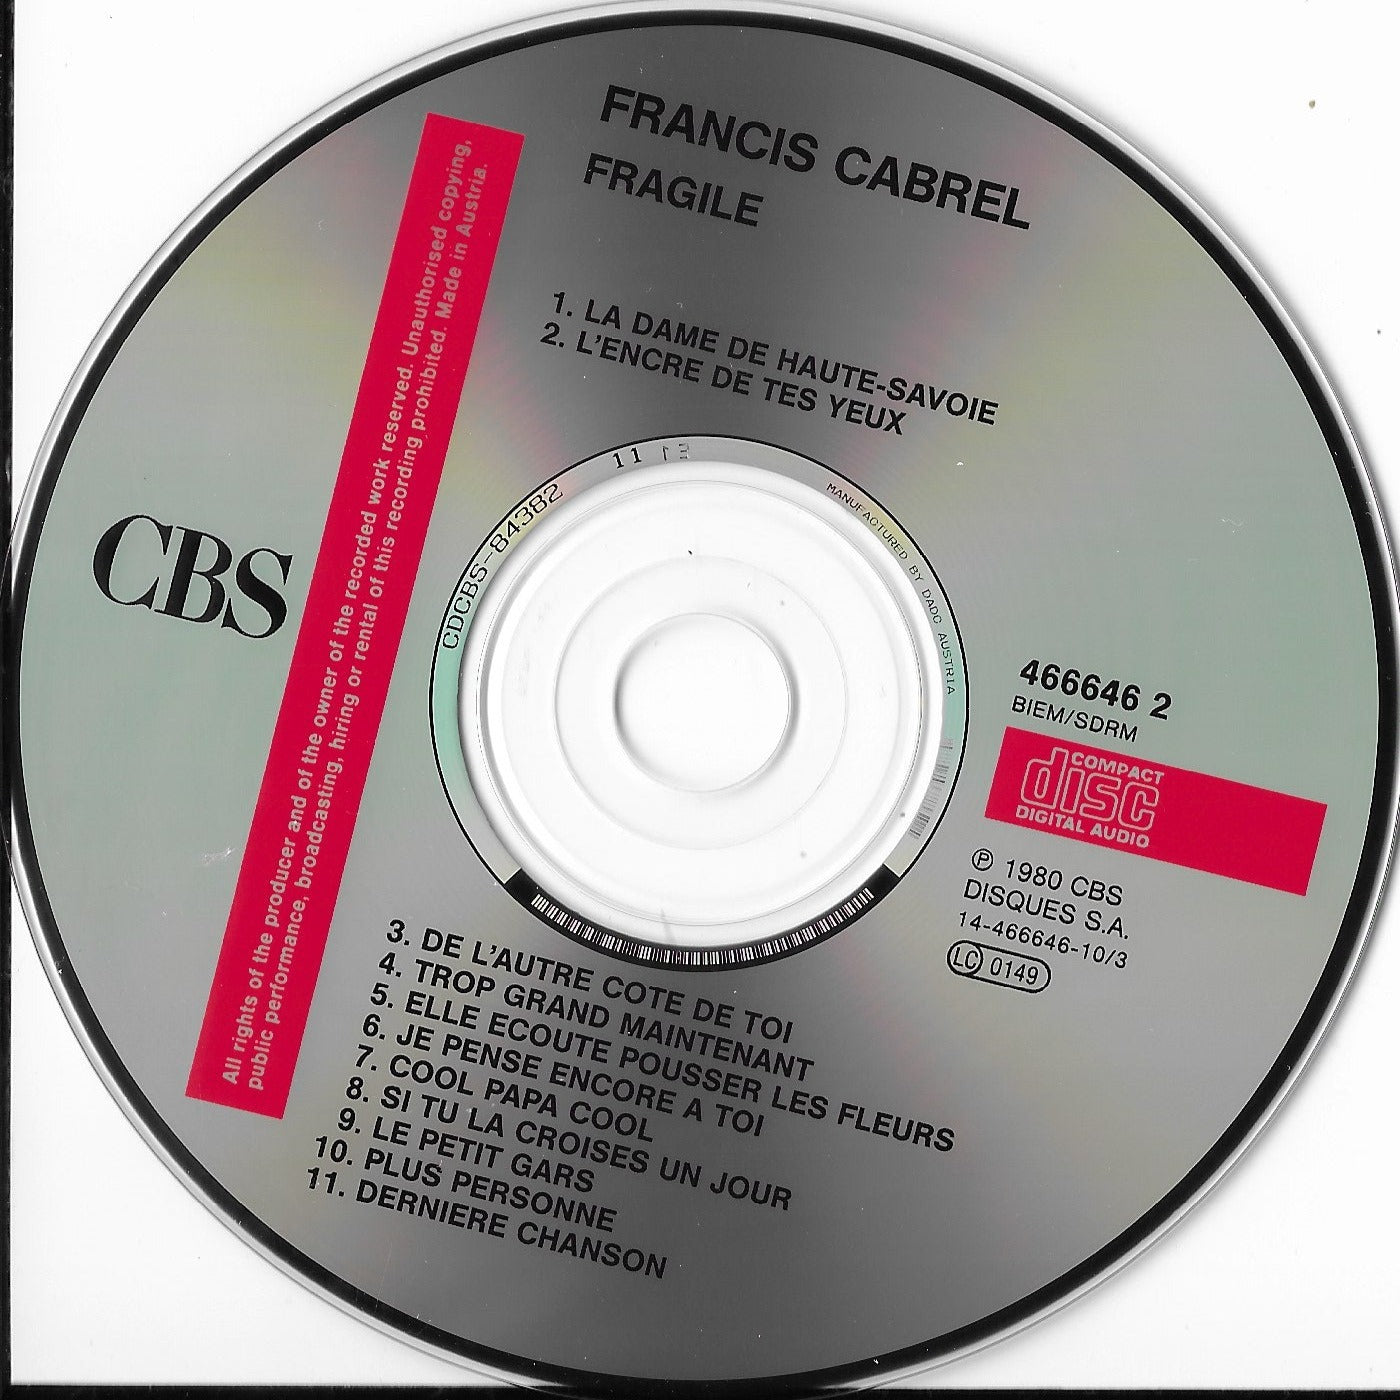 FRANCIS CABREL - Fragile